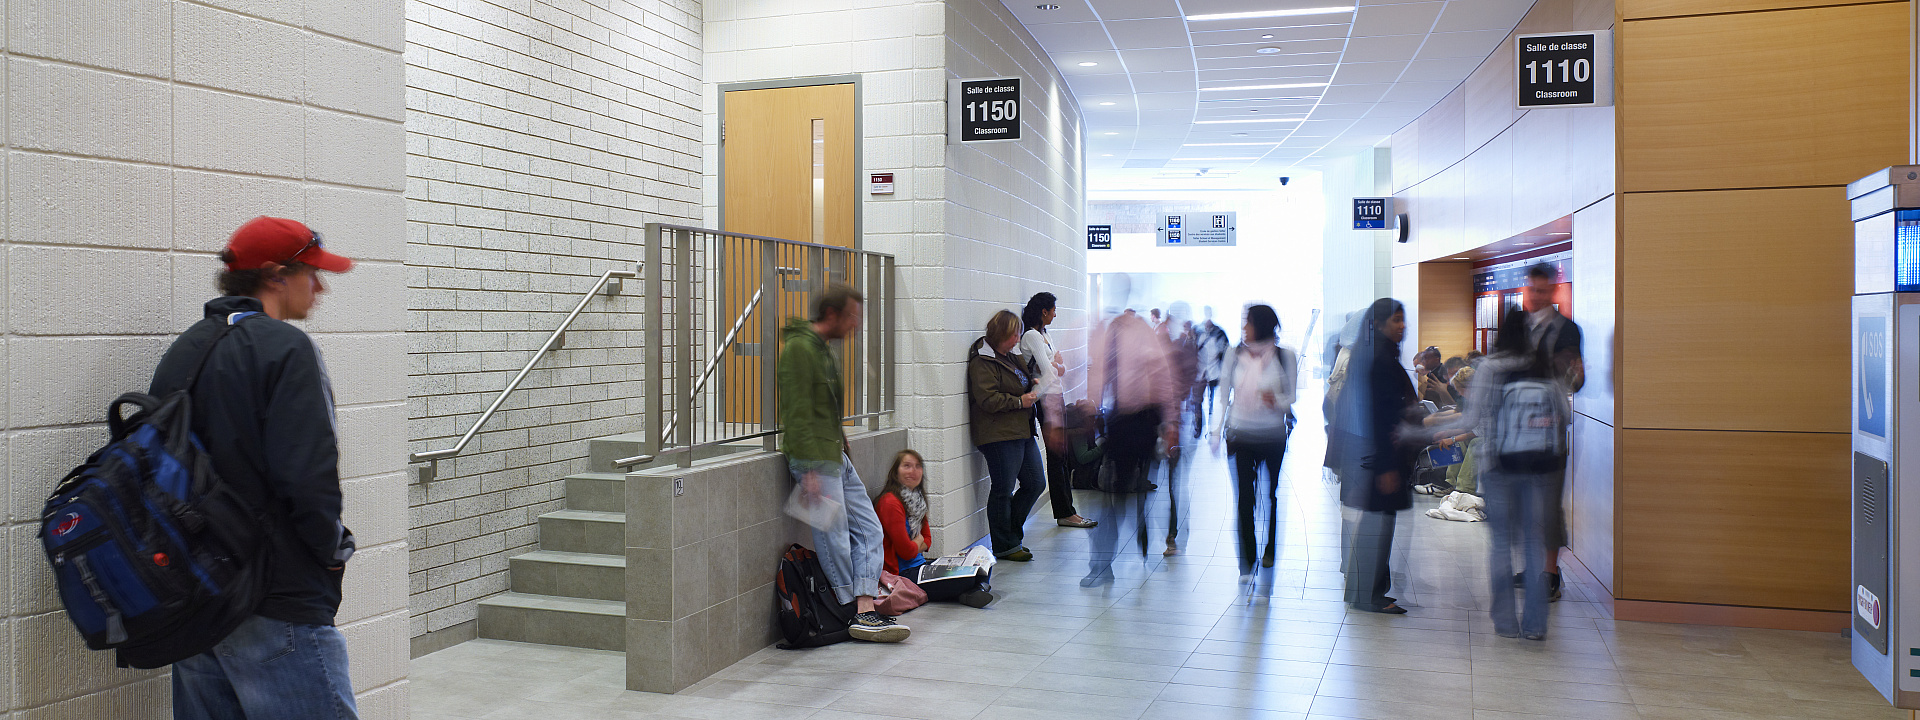 Des étudiants de Telfer attendent à l'extérieur d'une salle de classe au pavillon Desmarais de l'Université d'Ottawa